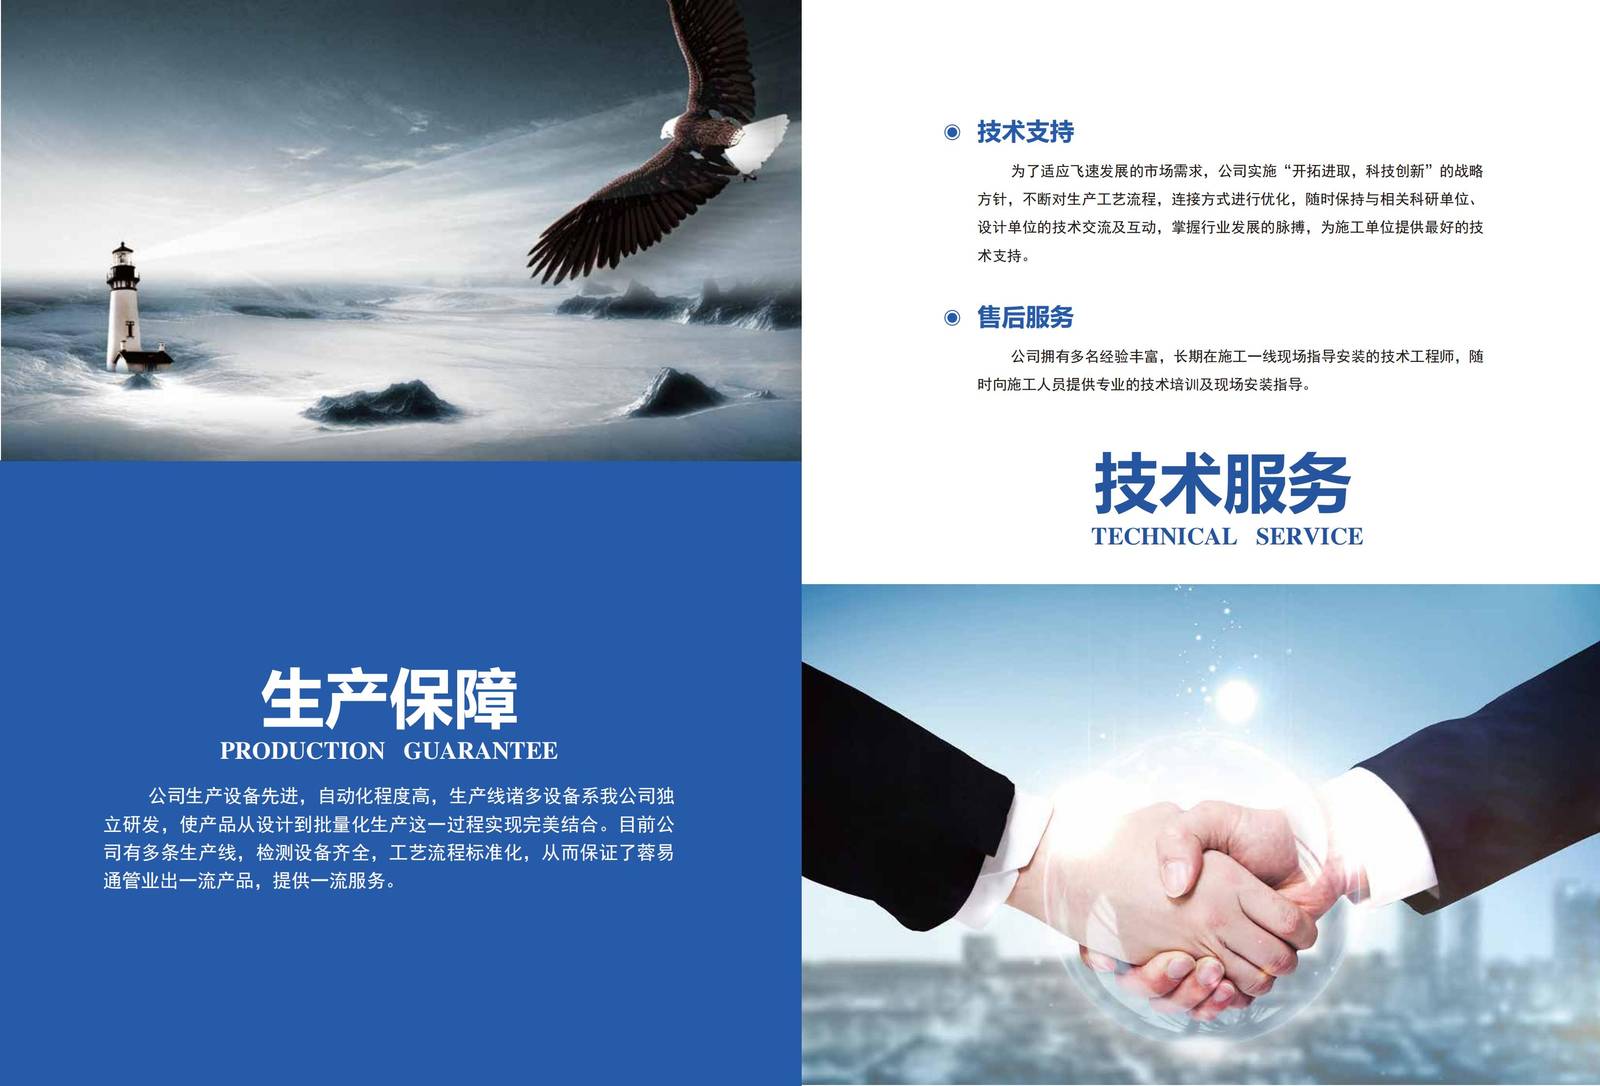 蓉易通企业品牌宣传印刷手册-第9张